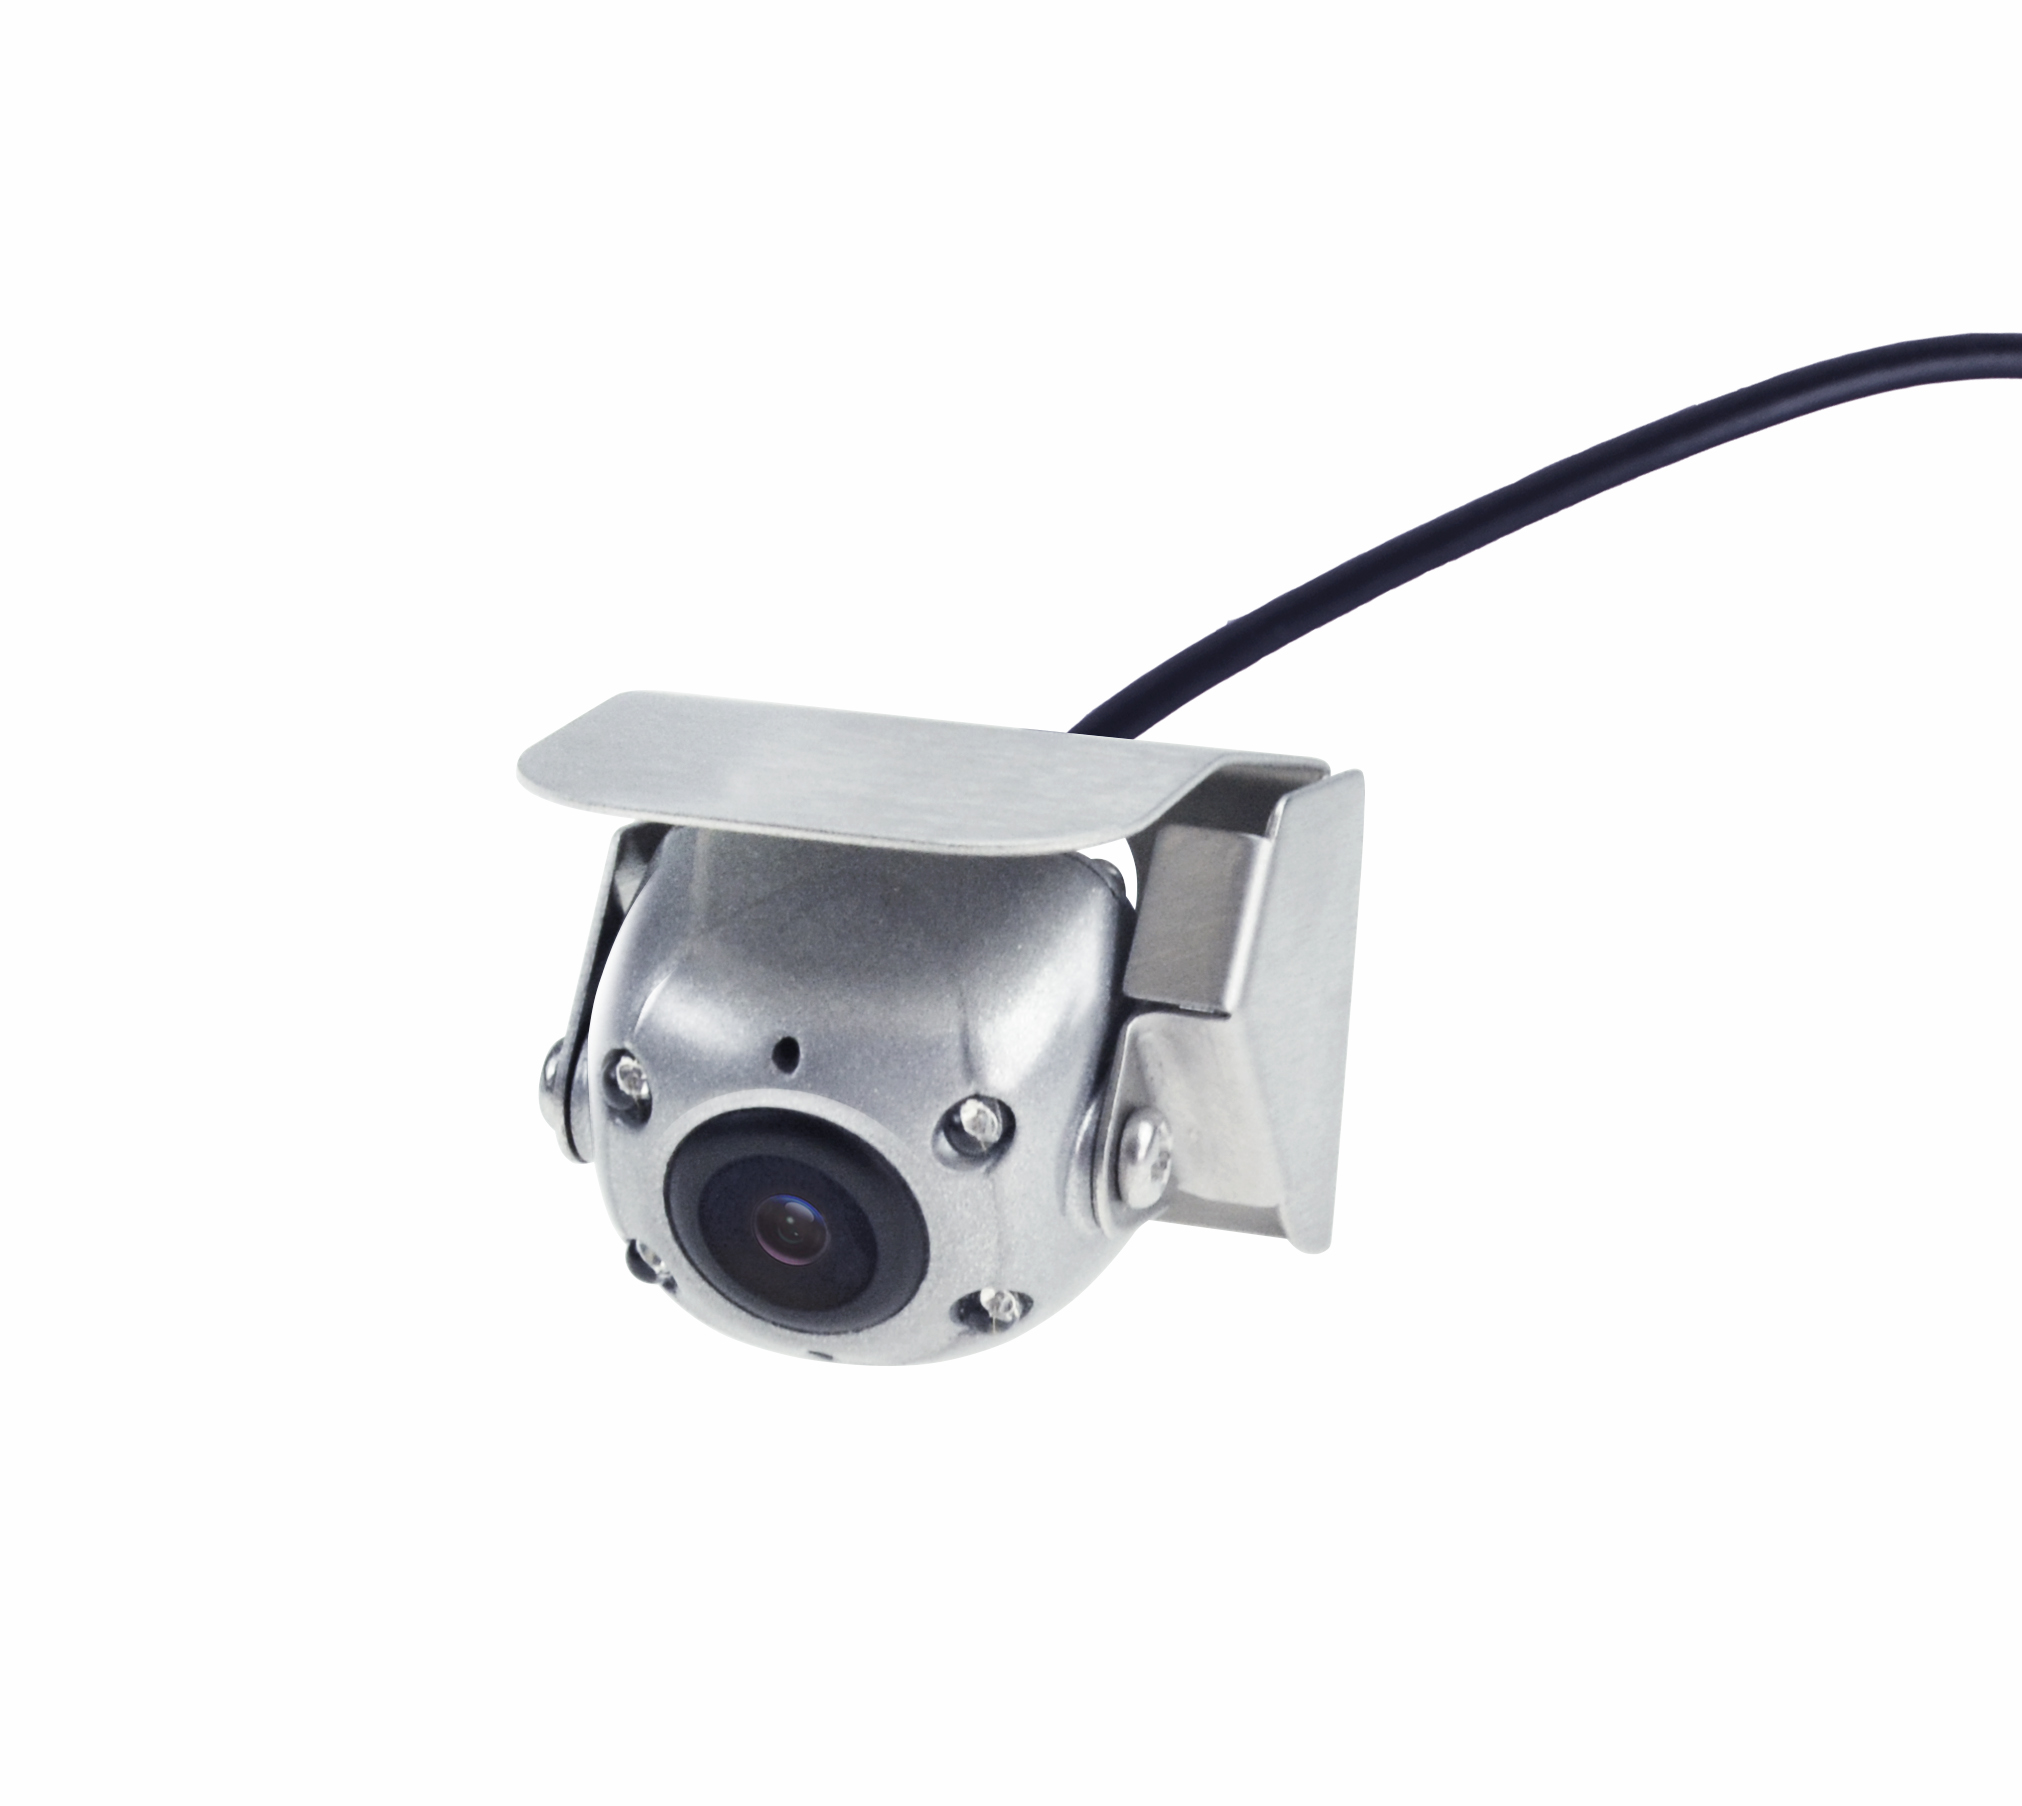 Мини - широкоугольная камера BR - MNC10, корпус из нержавеющей стали.